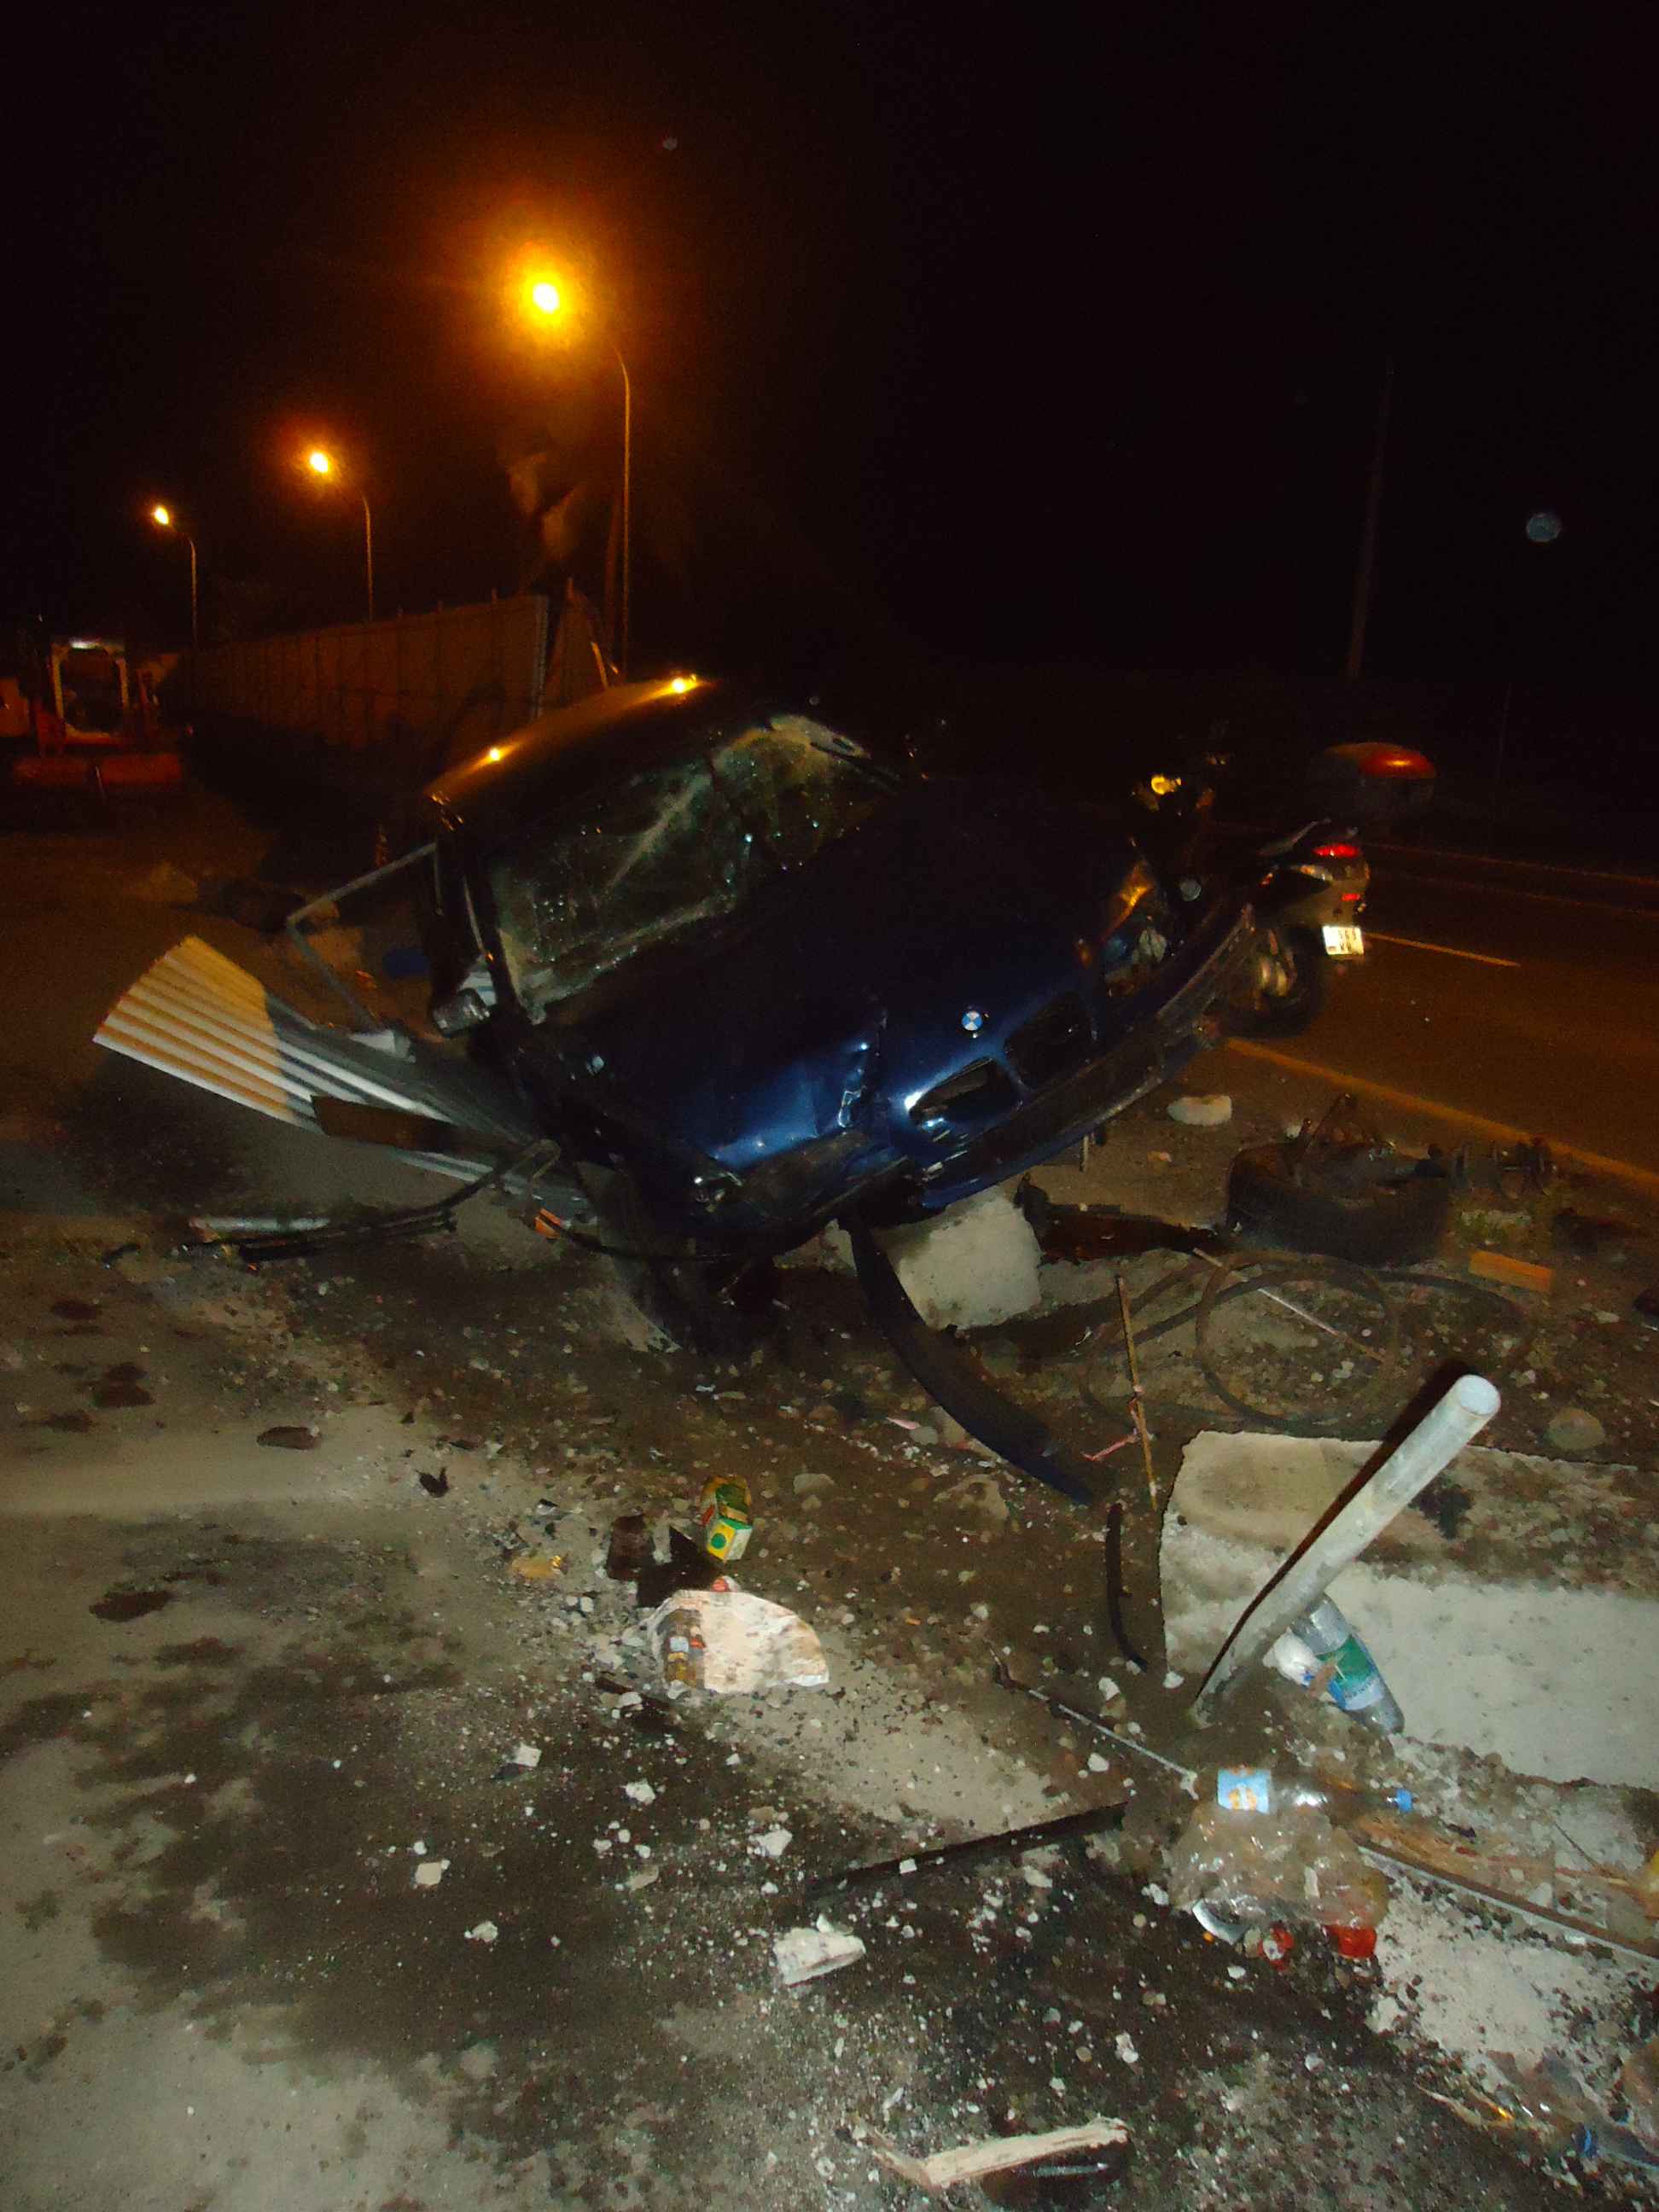 Punaauia: Le conducteur sort indemne d'un accident spectaculaire